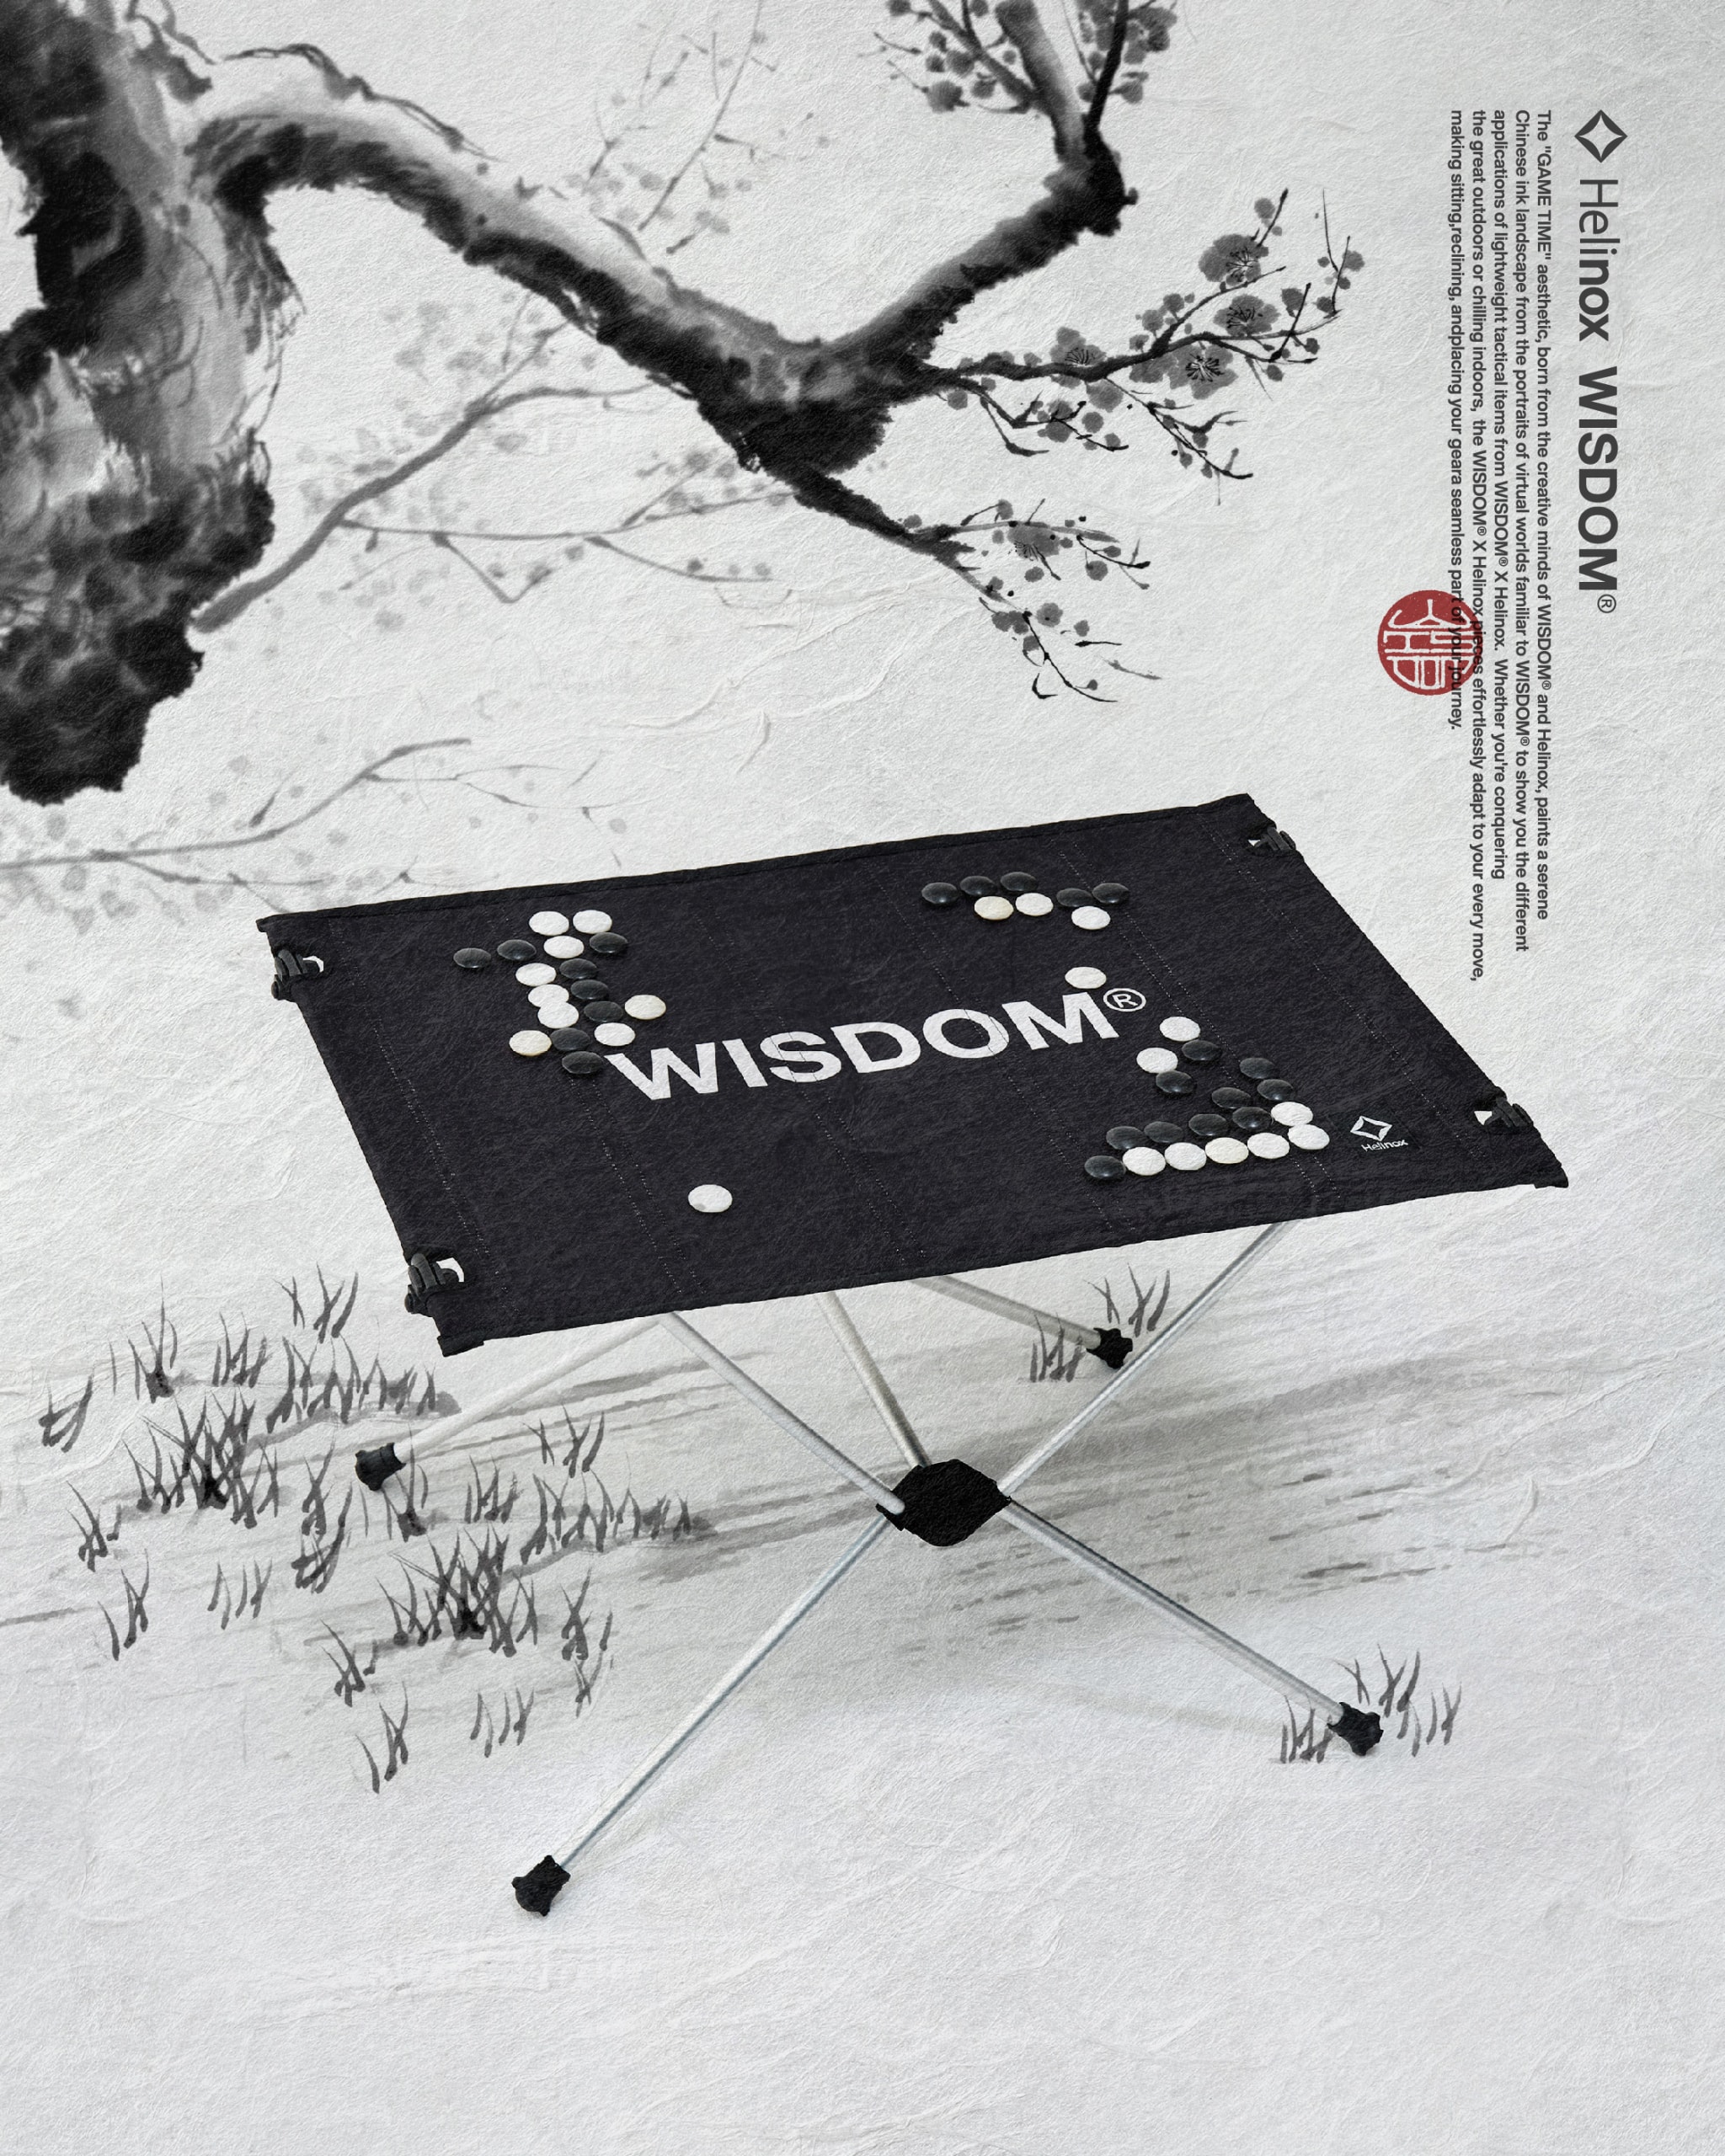 WISDOM® X Helinox 正式推出聯名戶外用品系列「GAME TIME」